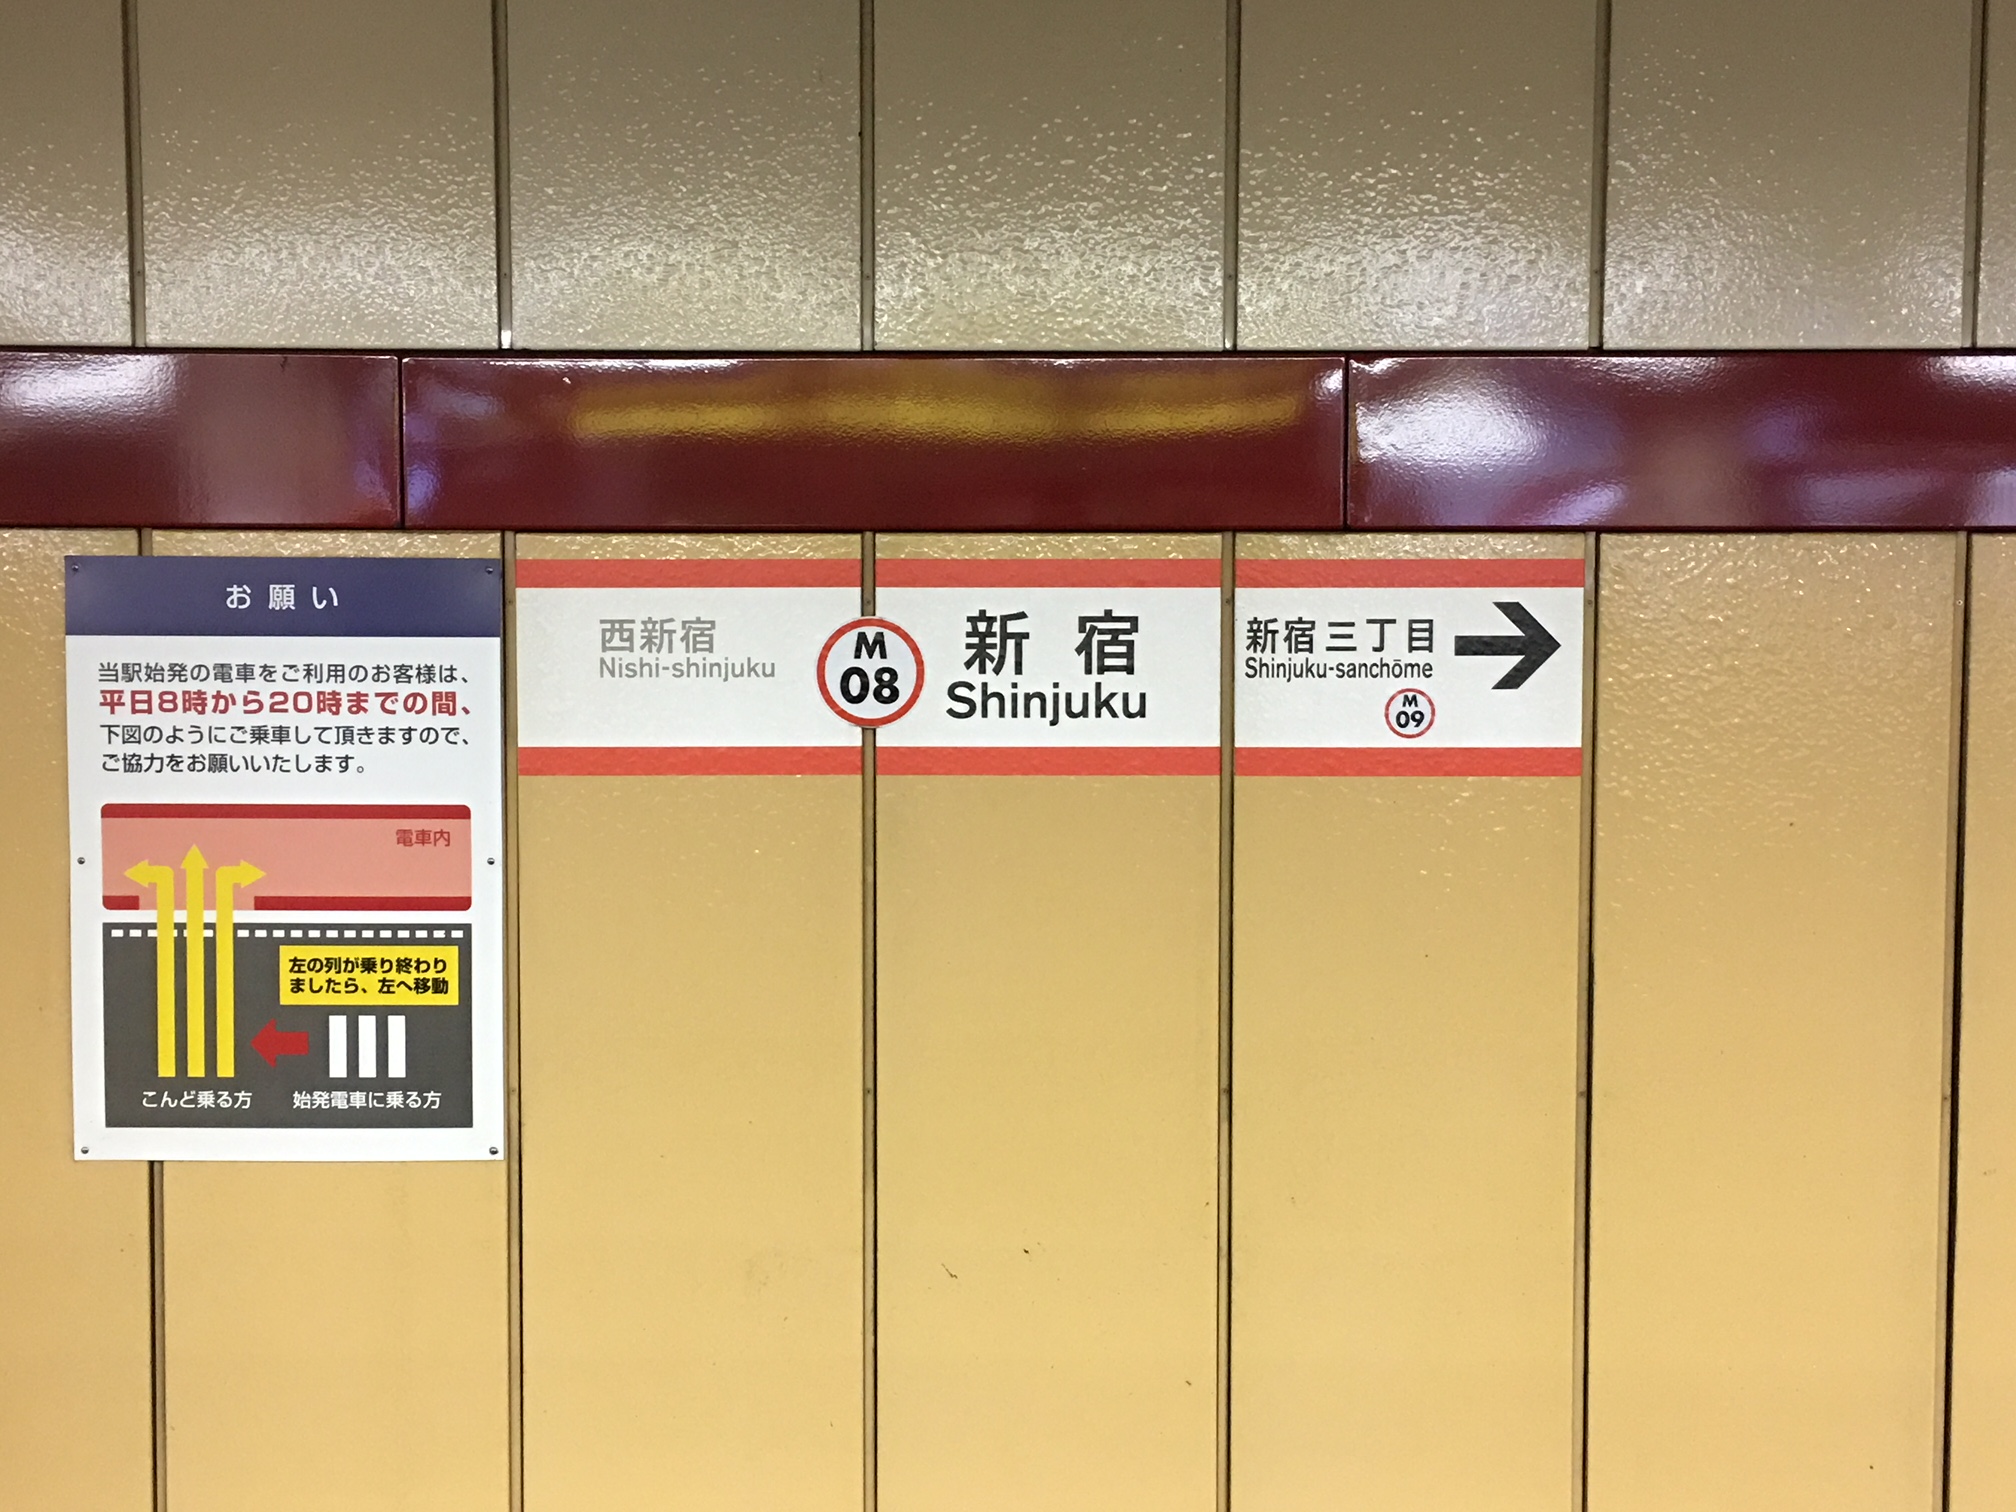 丸ノ内線 新宿駅 から山手線 新宿駅 までのホーム間を歩いてみた 乗り換えシリーズ ホンネ不動産 不動産で損をしない為のコラムを更新中